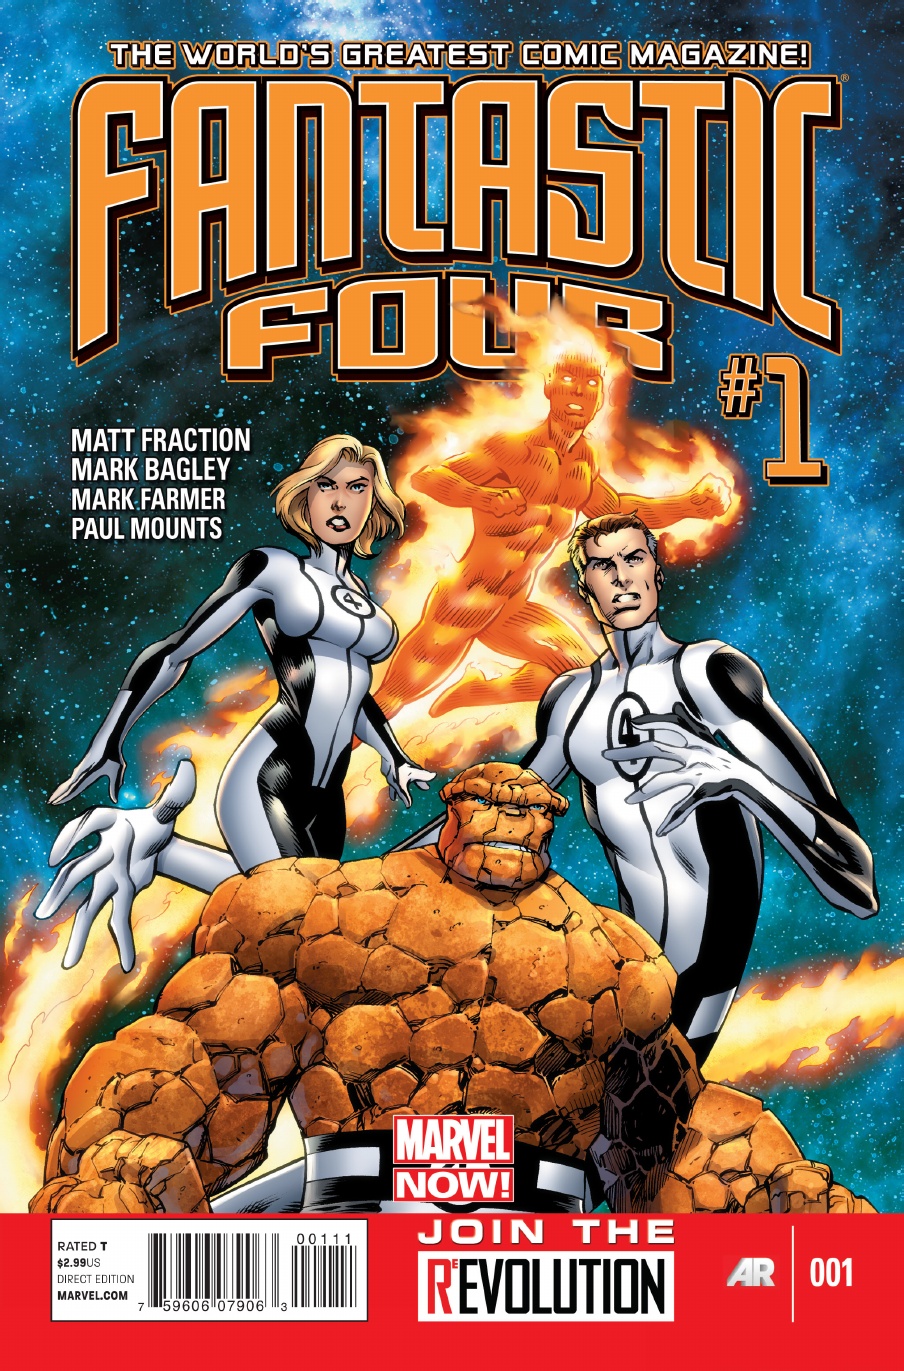 Fantastic Four Vol. 4 #1